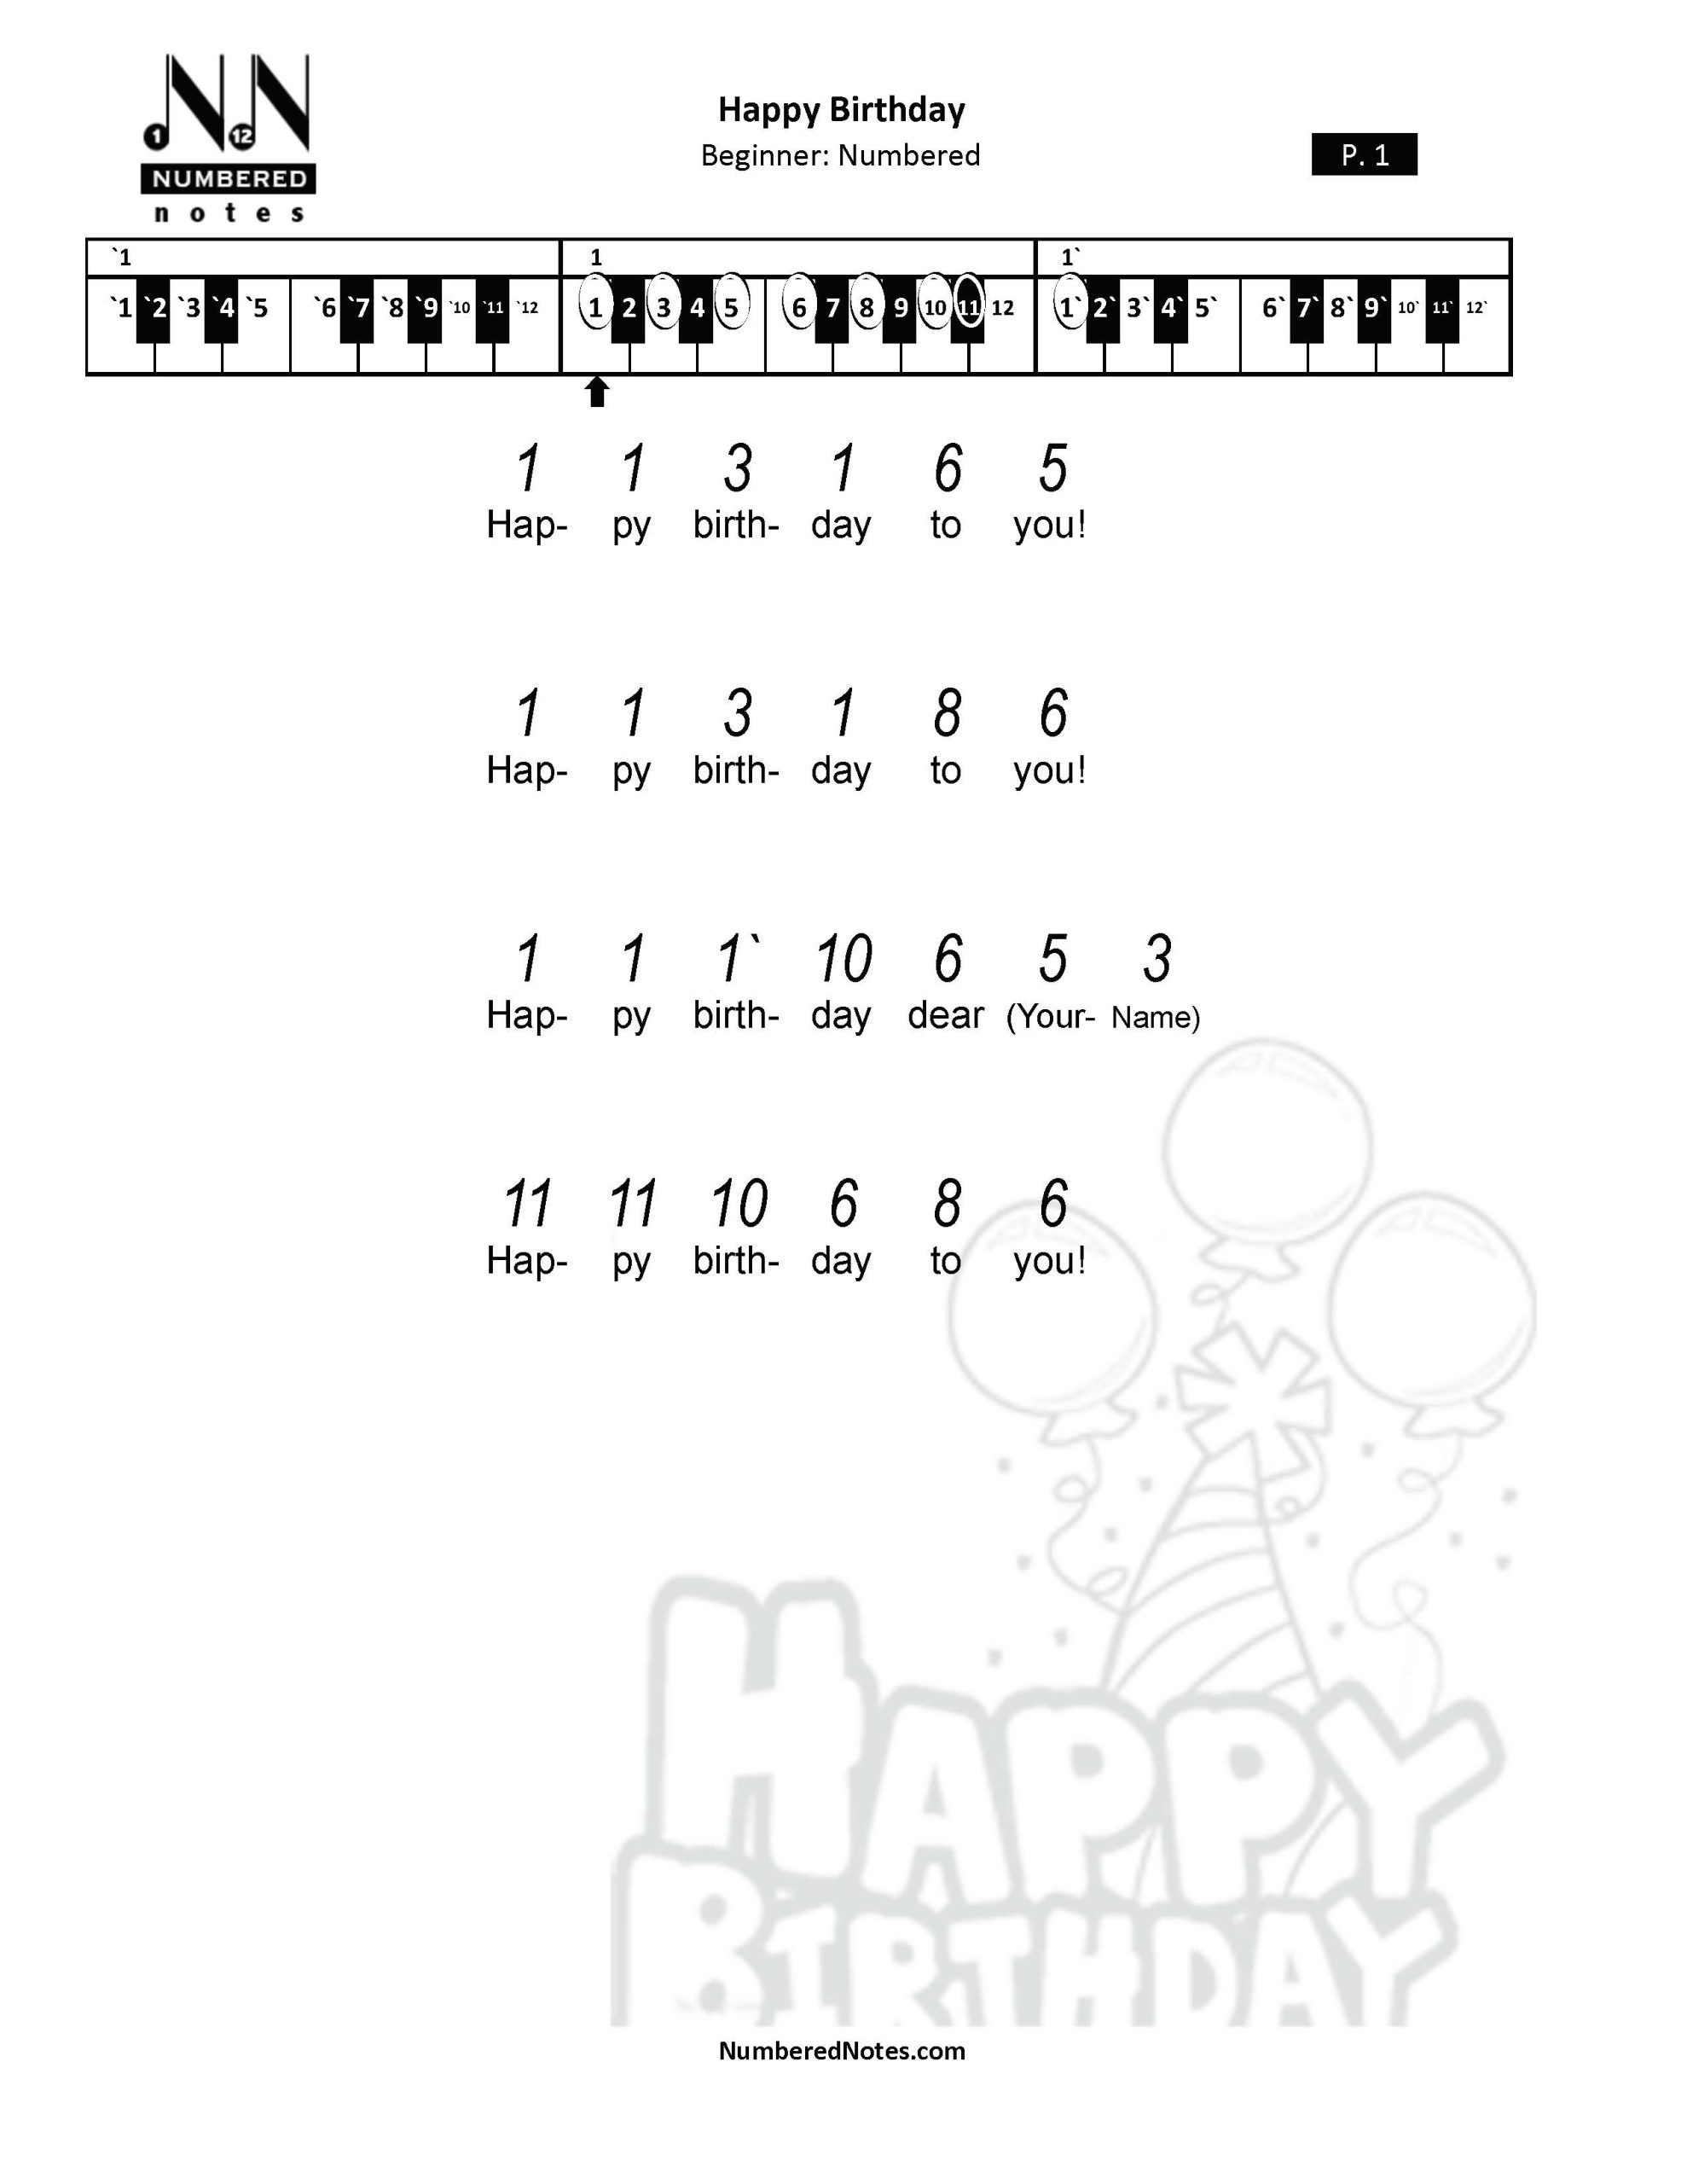 song black happy birthday piano keys